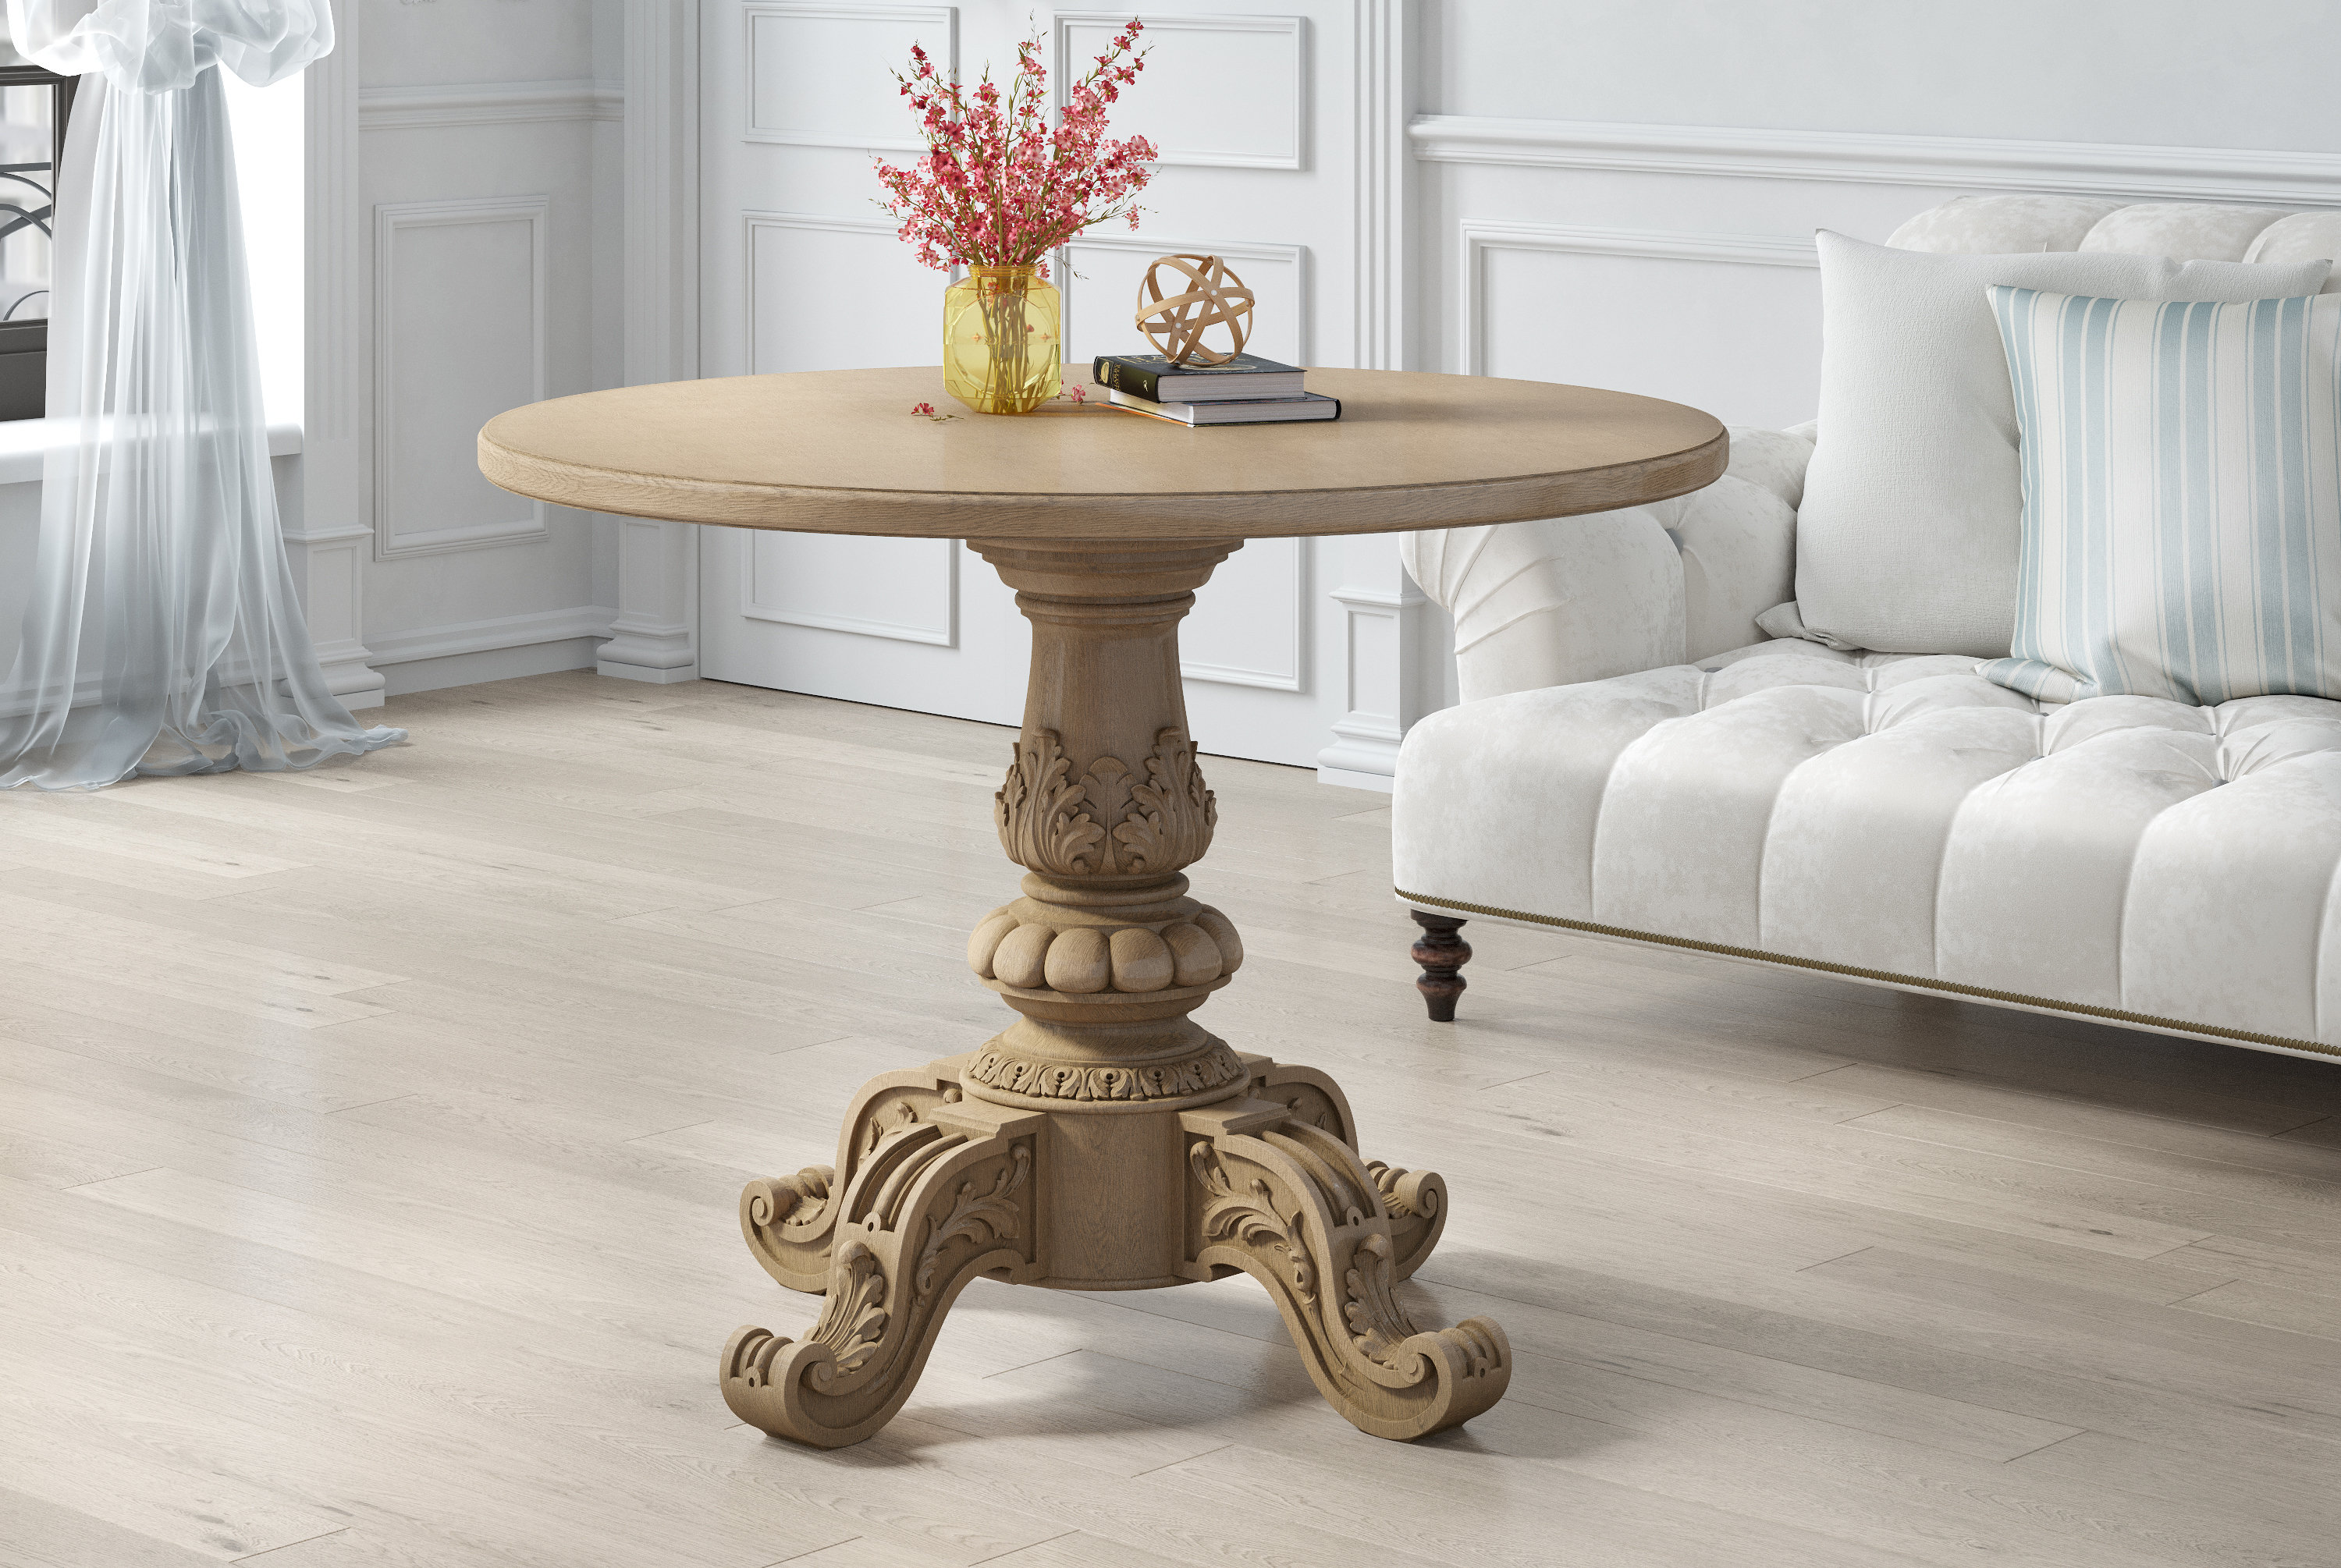 van Oh jee bevestigen Unique Wood Pedestal Table Base Unfinished Central Table Leg - Etsy België